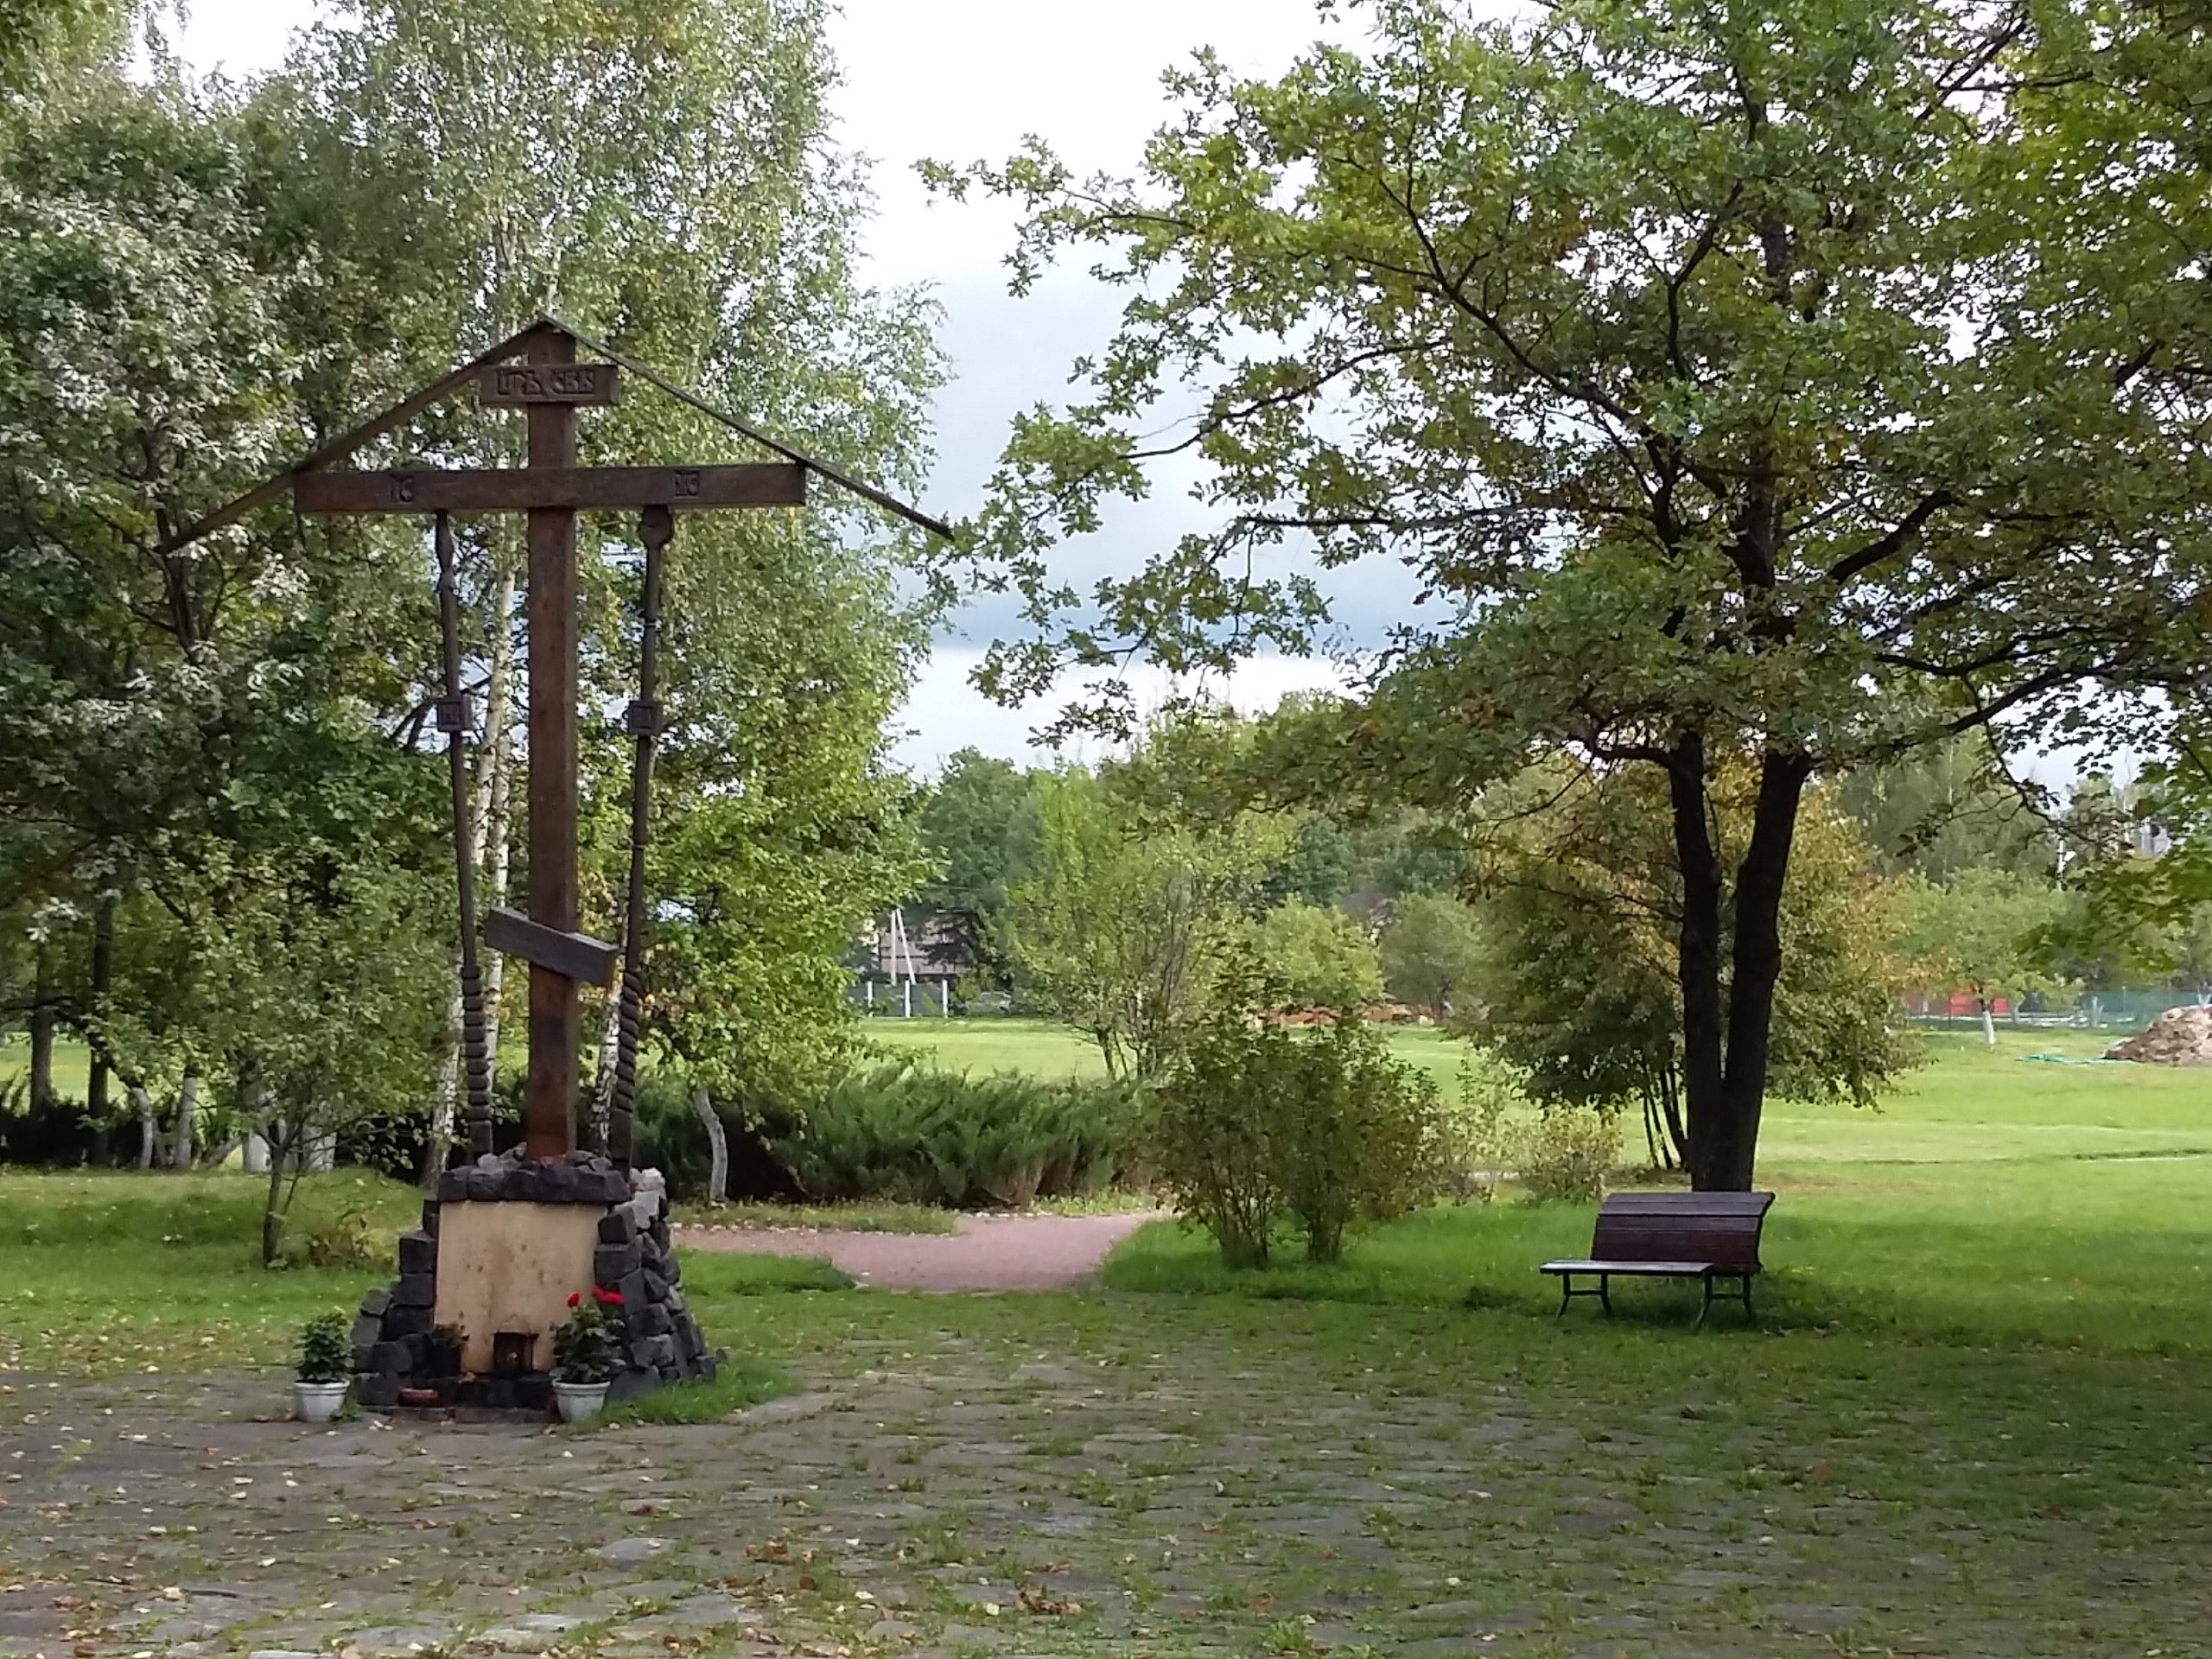 En krucifixliknande träställning står i en grönskande park.